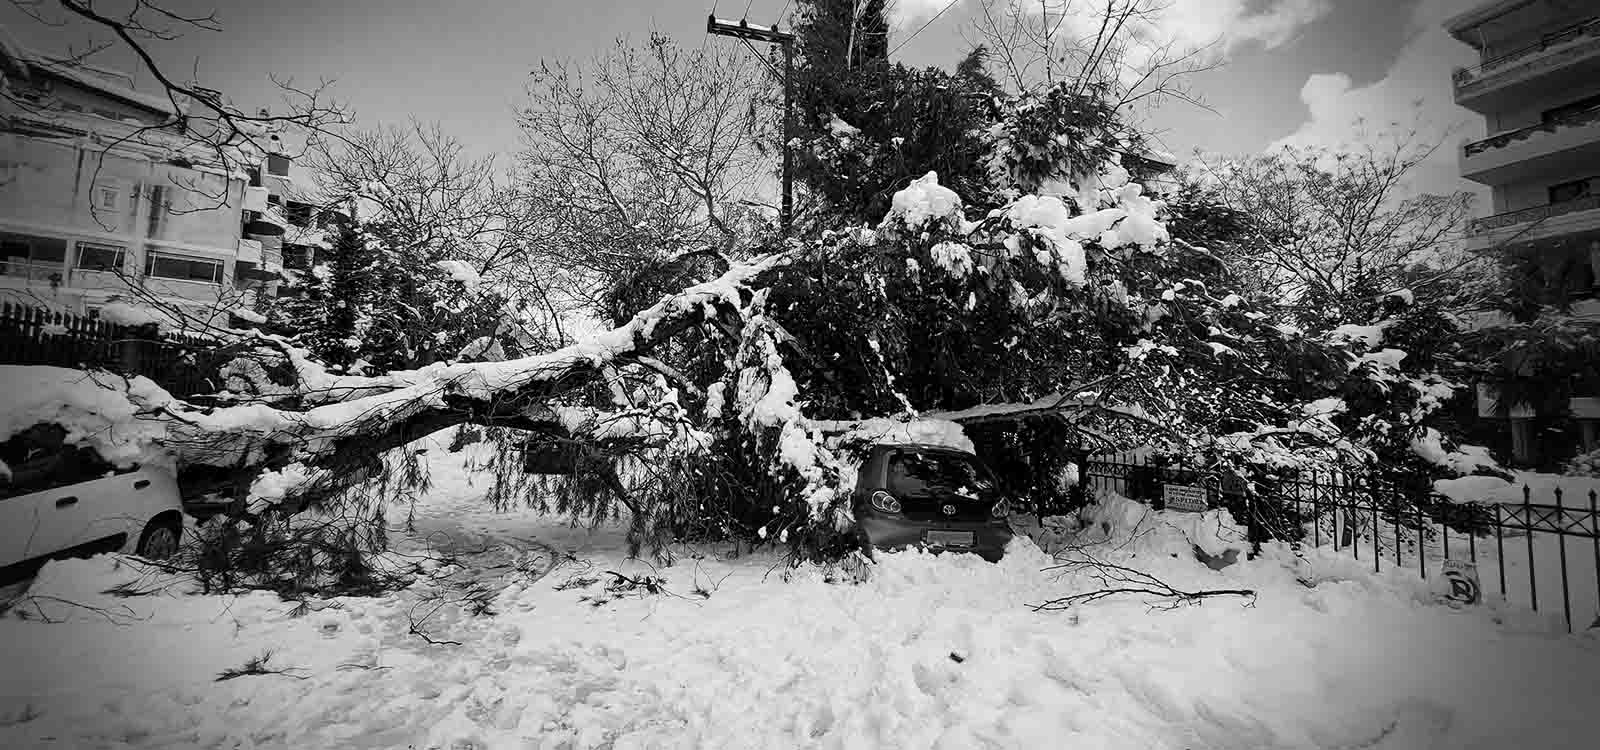 ασπρόμαυρη εικόνα, δέντρο πεσμένο πάνω σε αυτοκίνητο κάτω από χιόνια